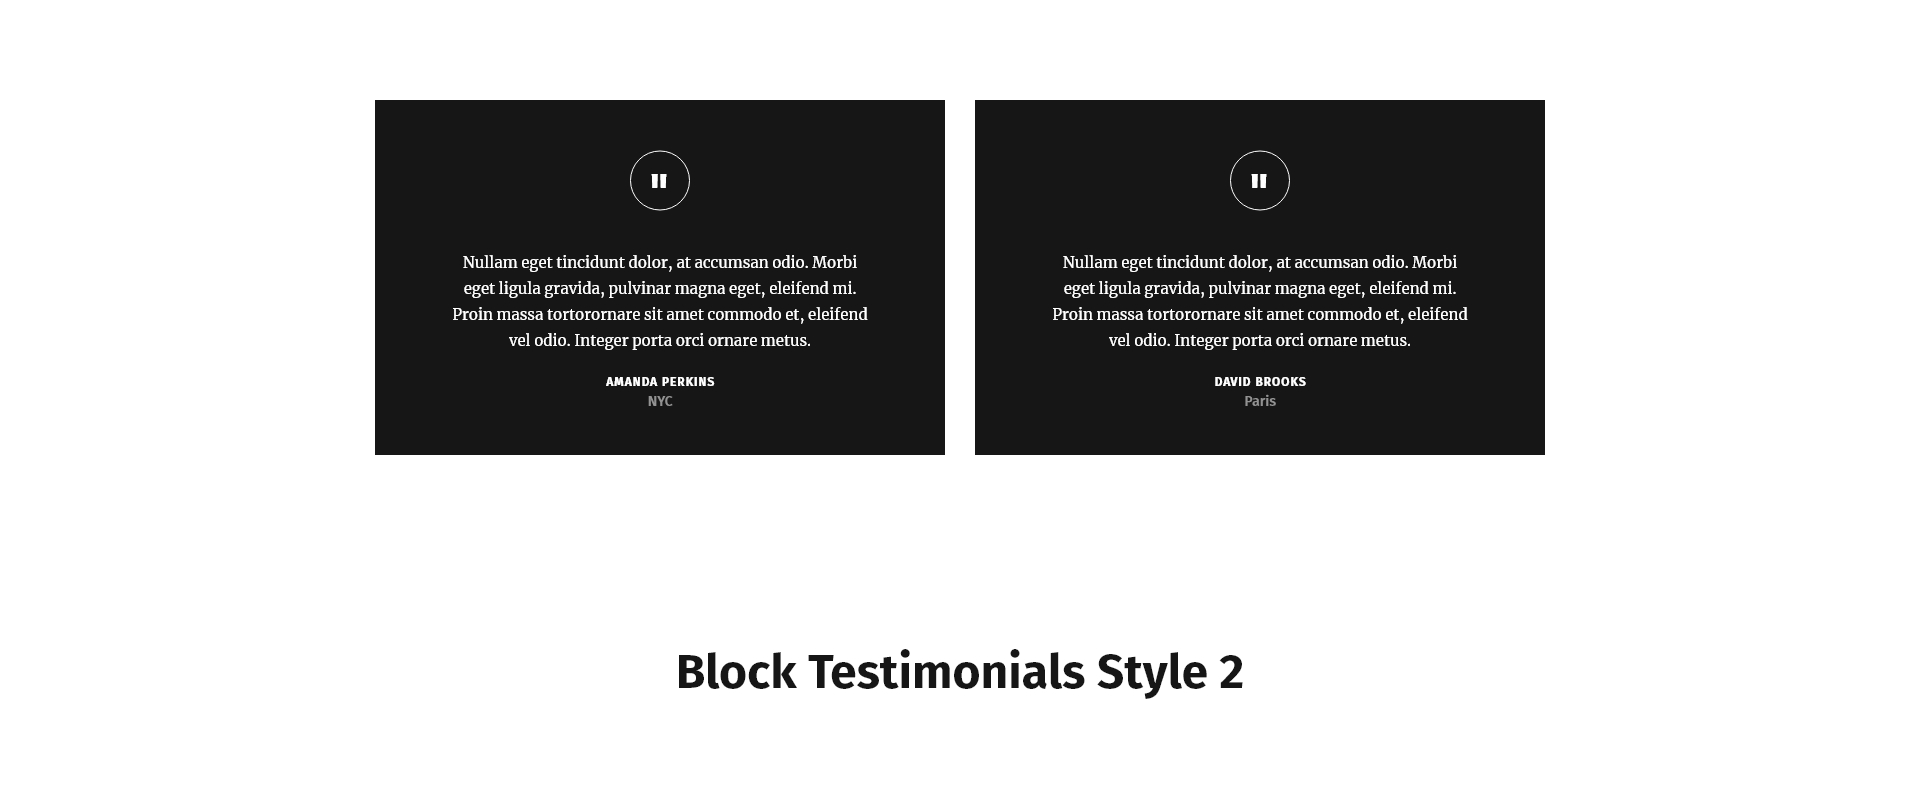 Block Testimonials Style 2 PRO